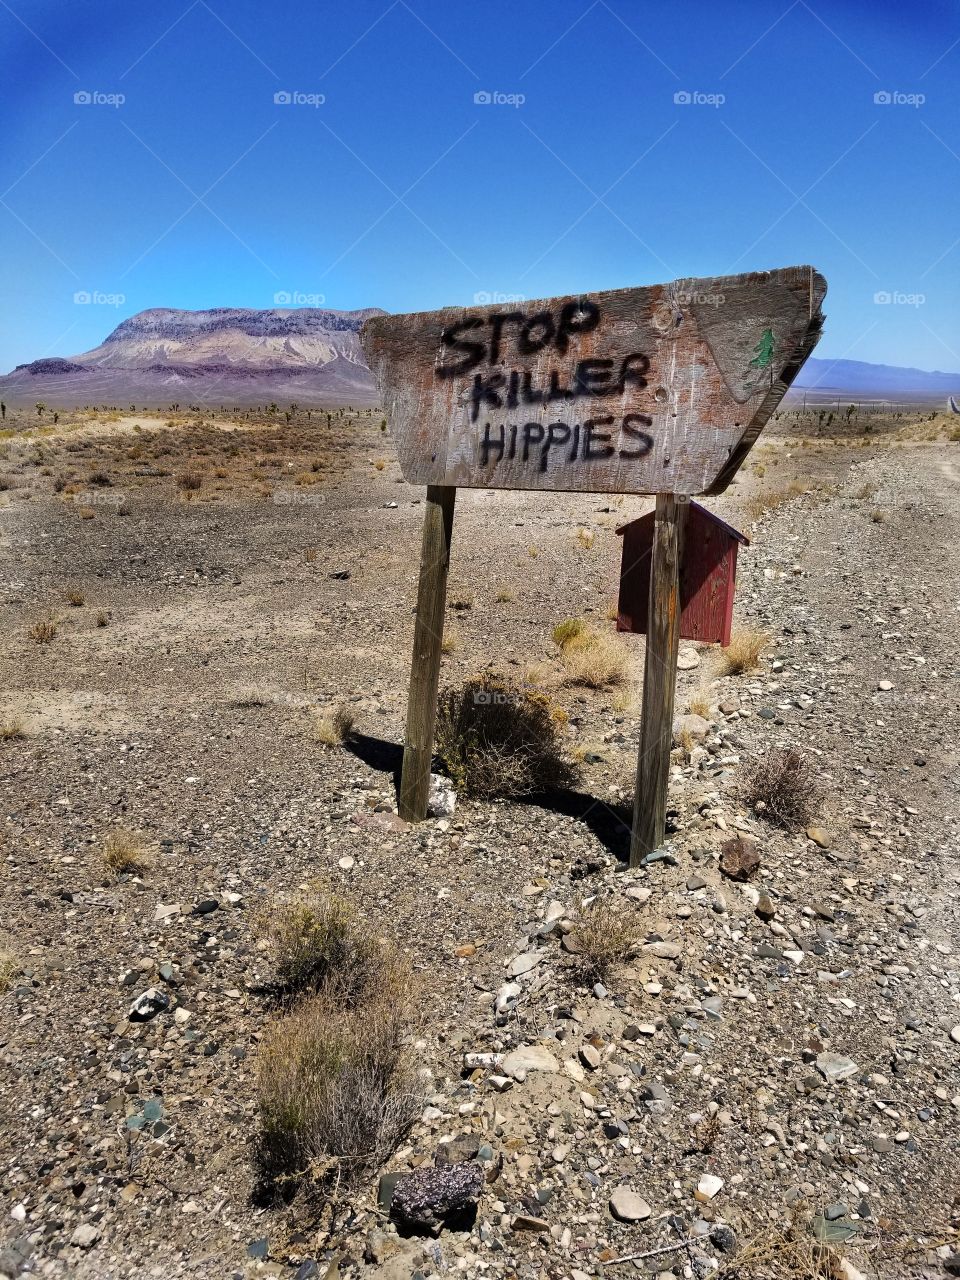 weird desert sign